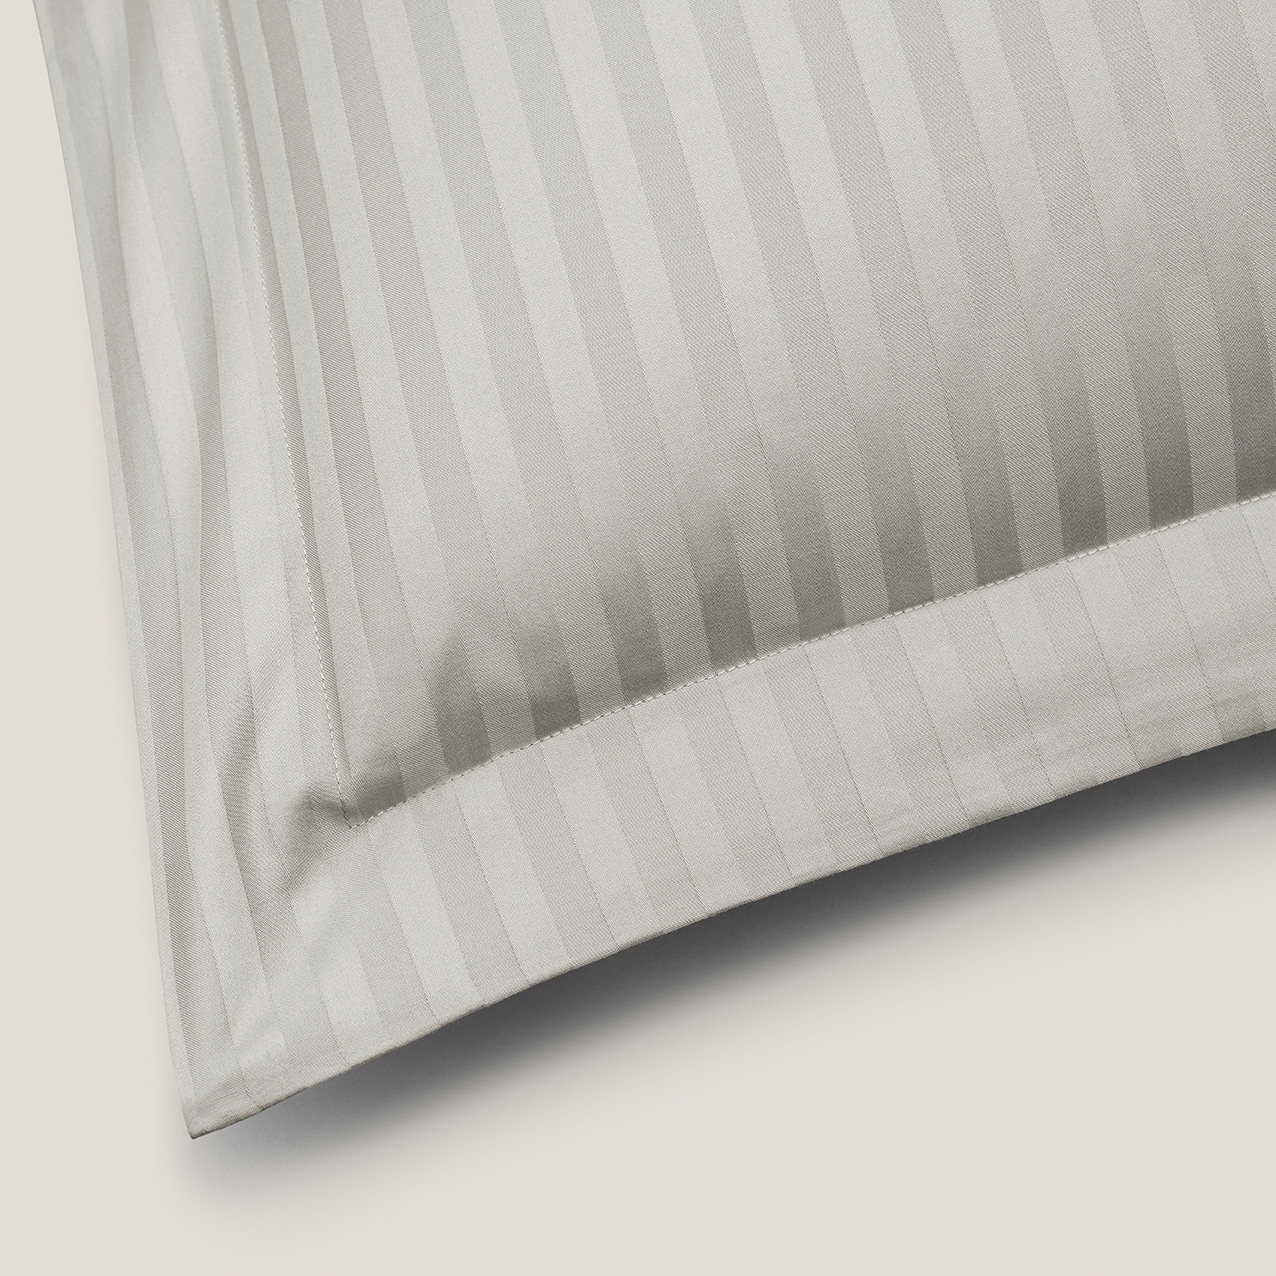 Комплект постельного белья Togas Ларье серый Двуспальный кинг сайз, размер Кинг сайз - фото 7